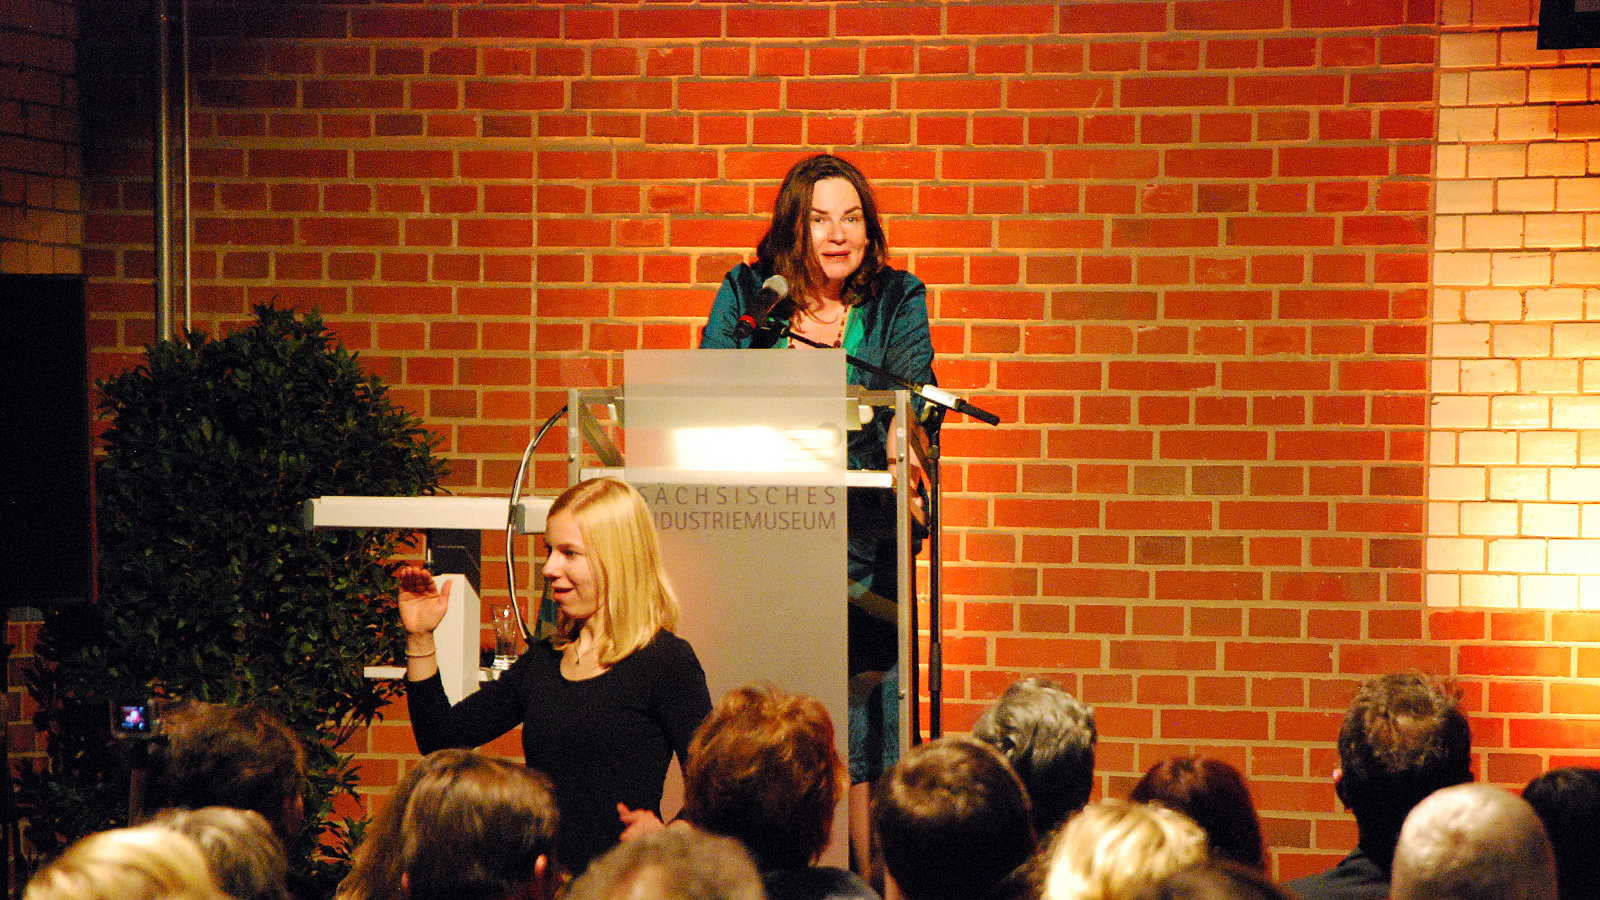 Frau steht vor dem Publikum und gestikuliert, während eine andere am Rednerpult steht und redet